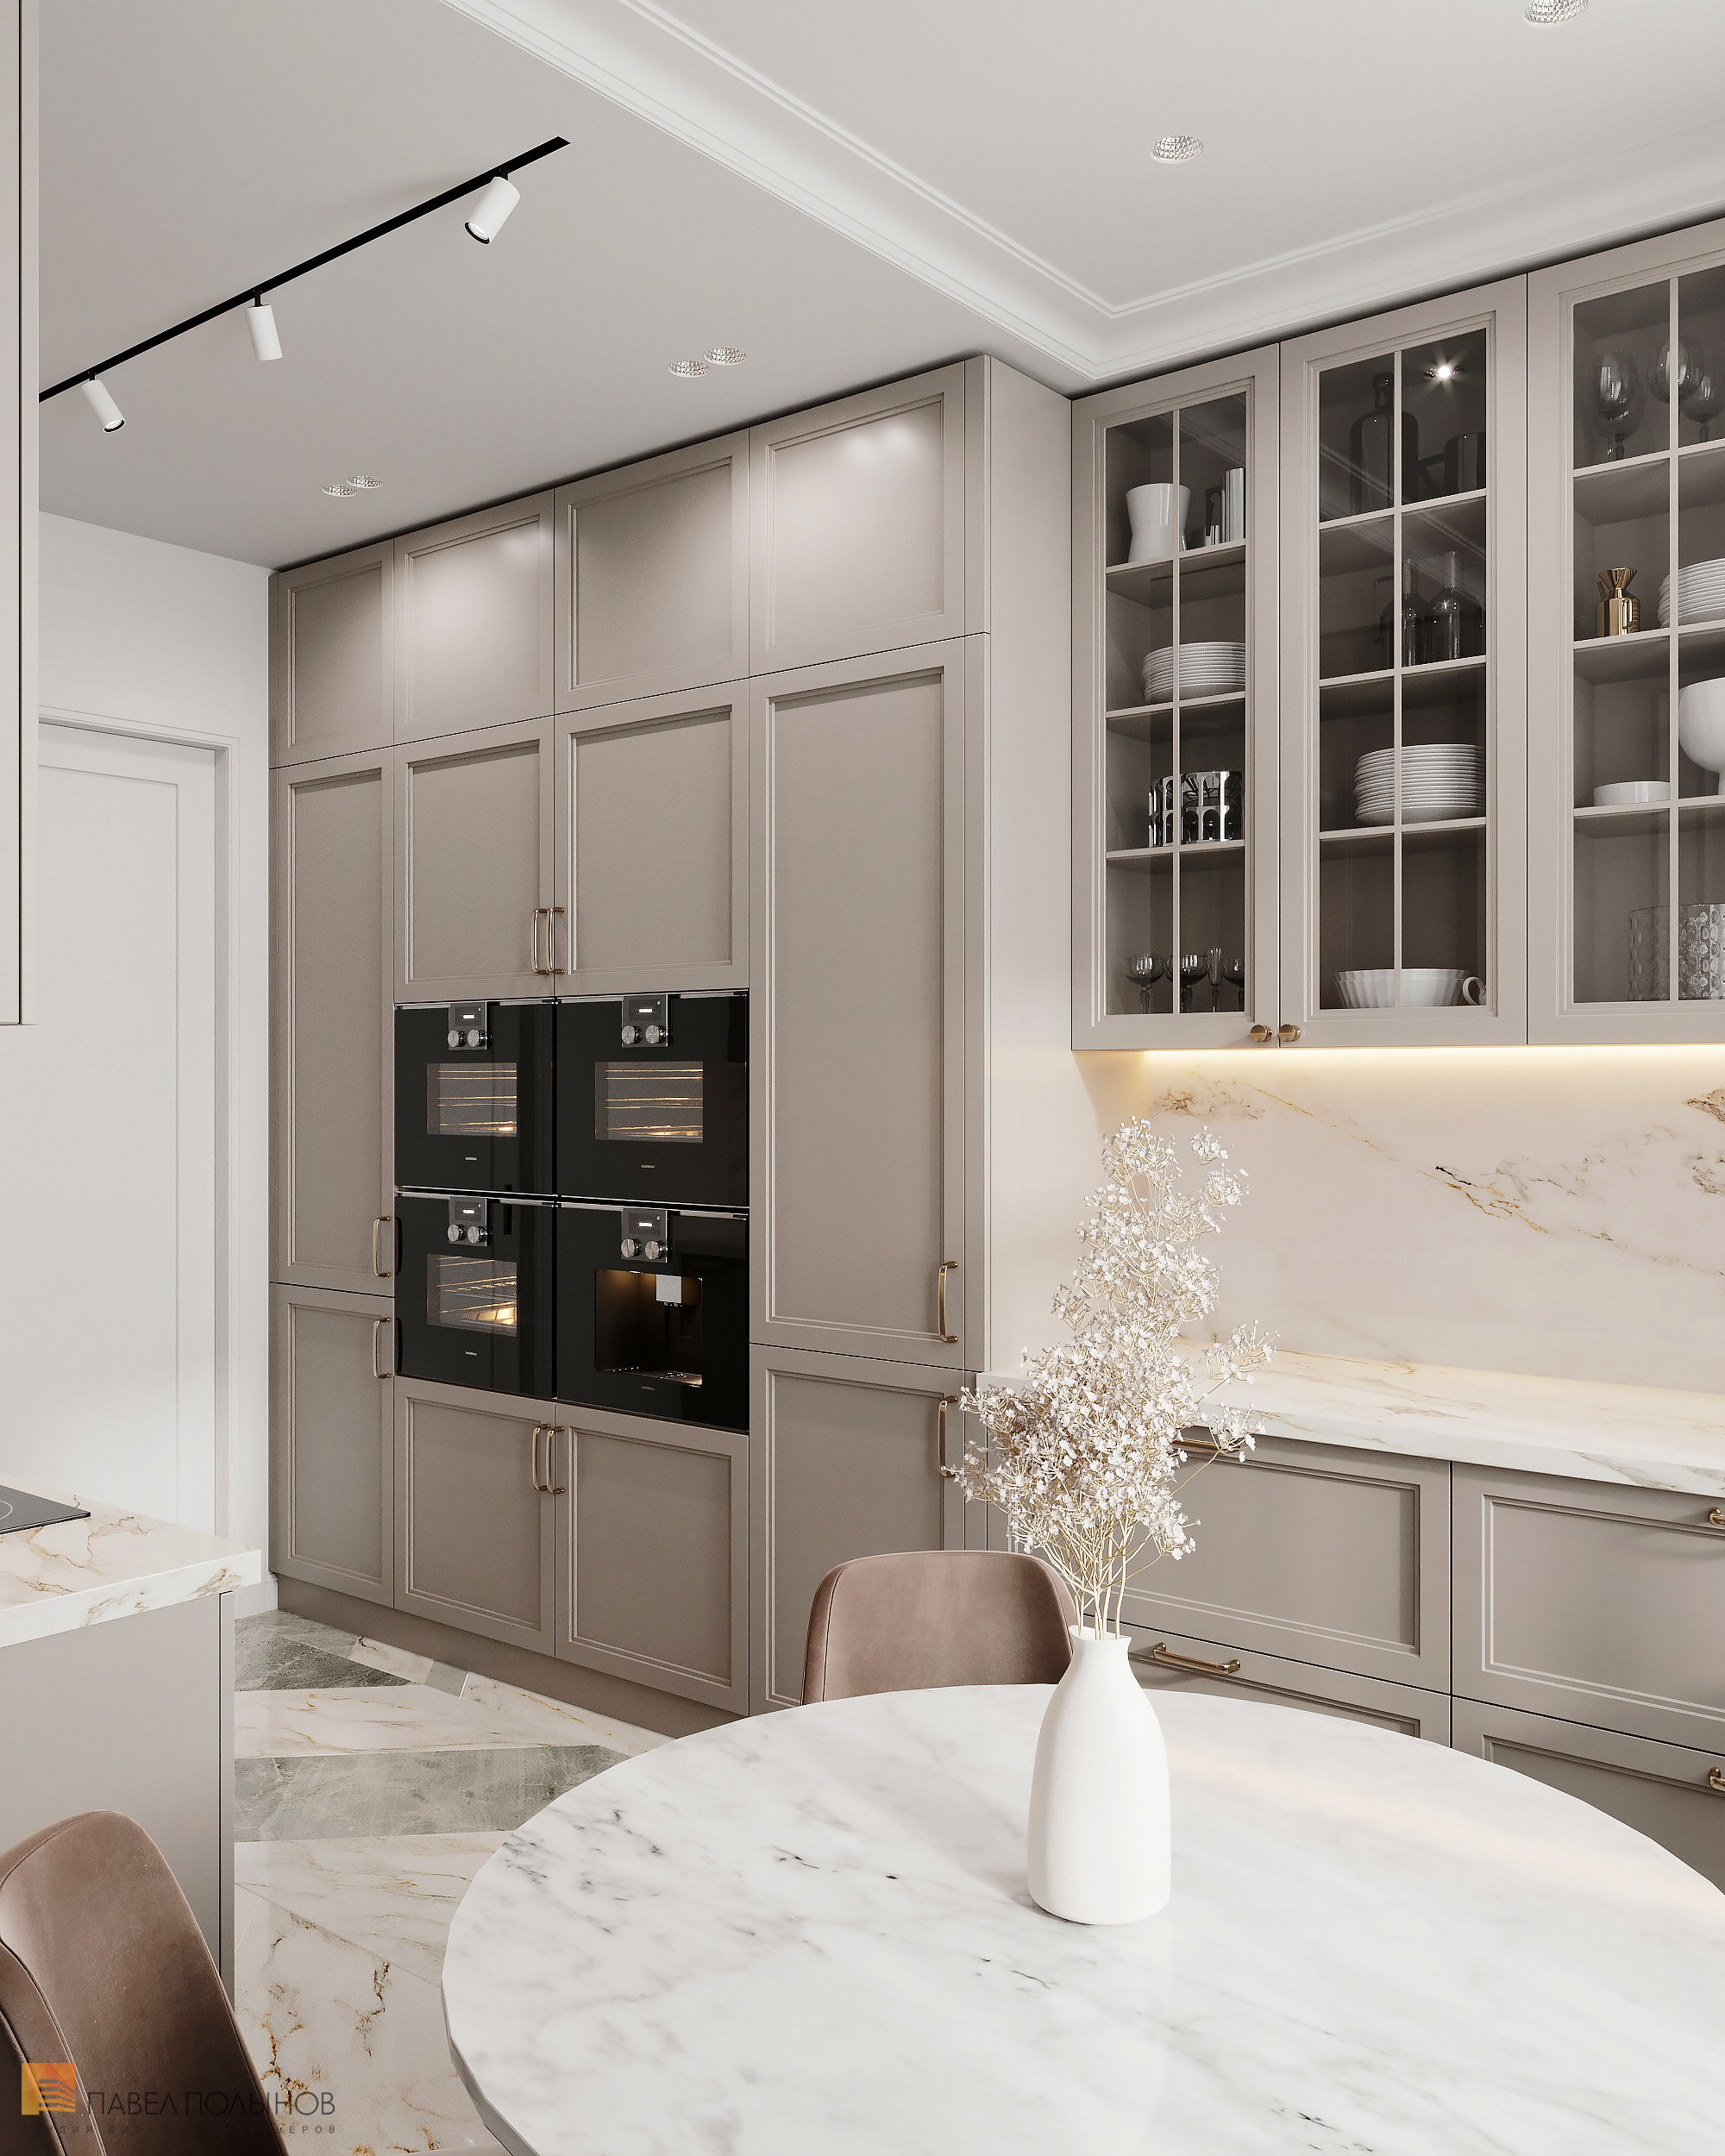 Фото дизайн интерьера кухни из проекта «Квартира в стиле неоклассики, ЖК «Алые Паруса», 124 кв.м.»